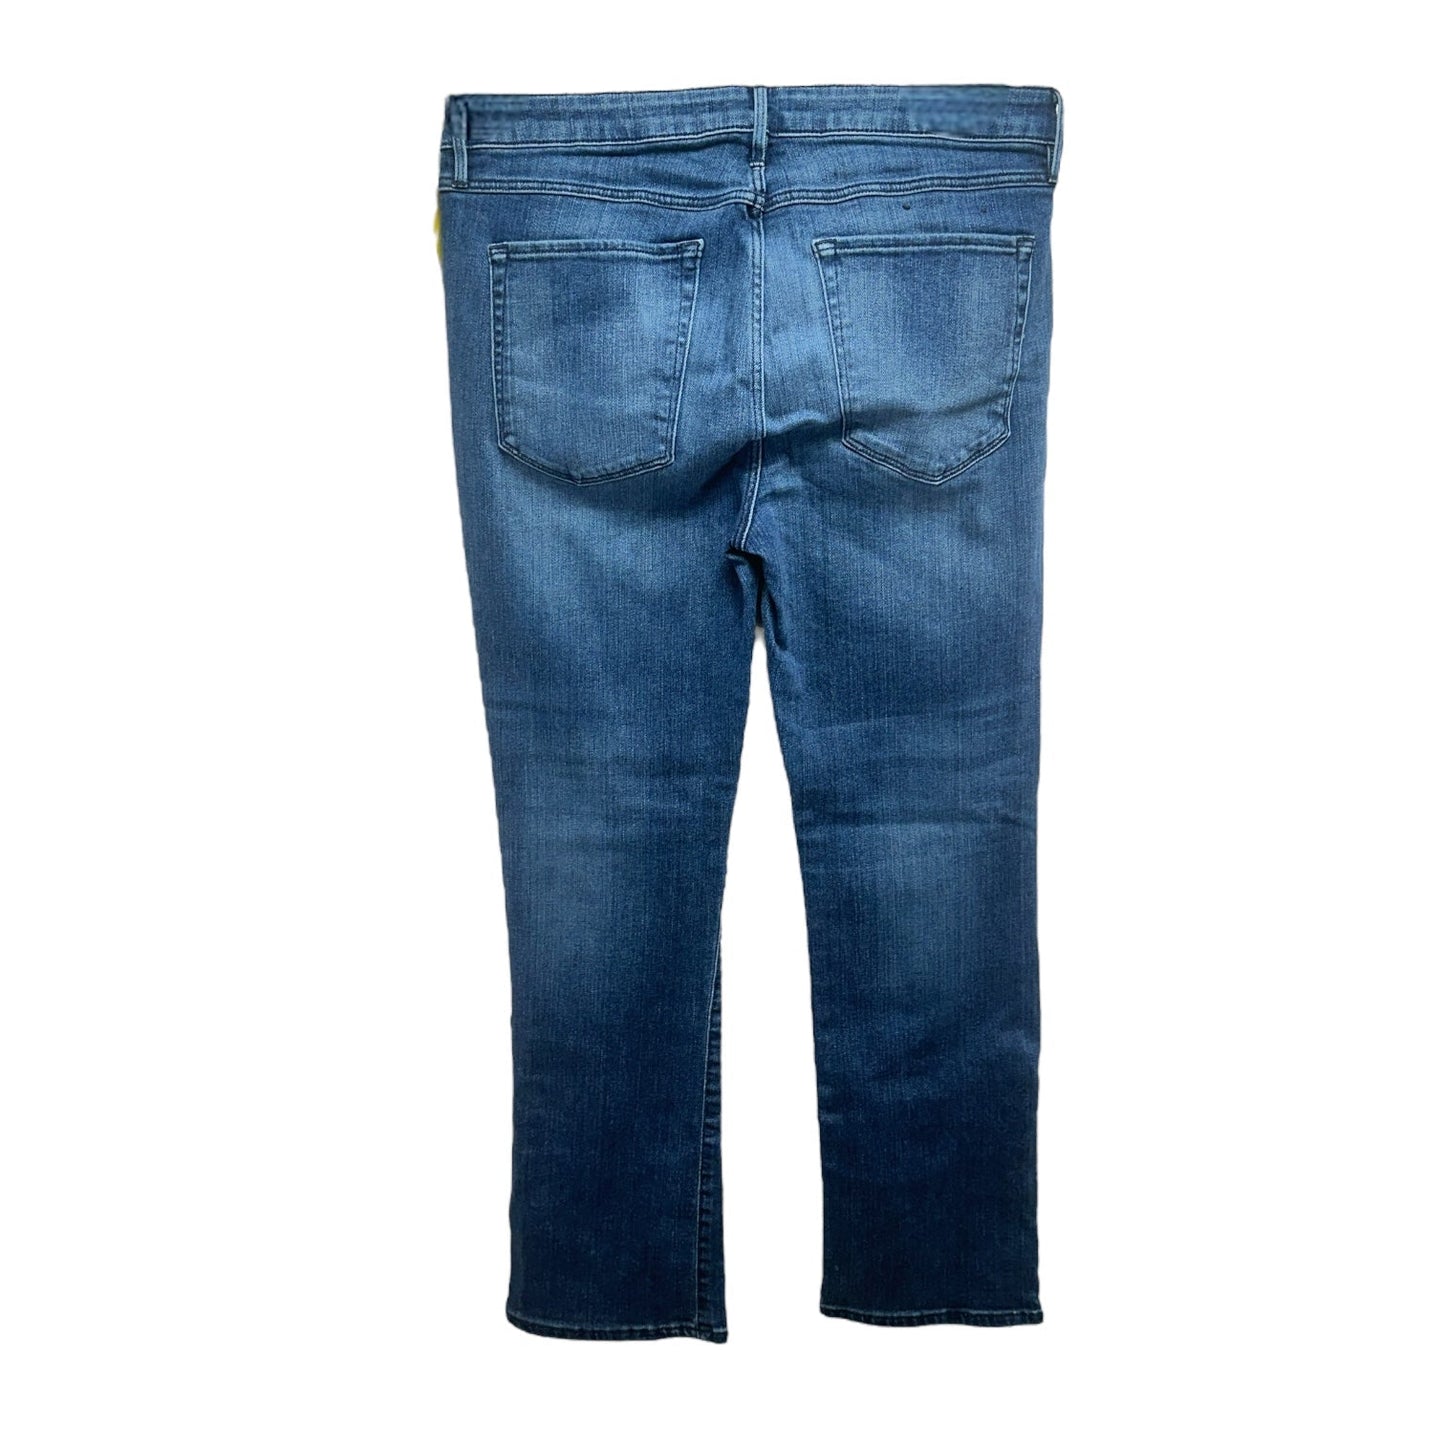 Presley Gusset Zip Jeans Cropped Denim Designer 3X1 Denim, Size 8/29